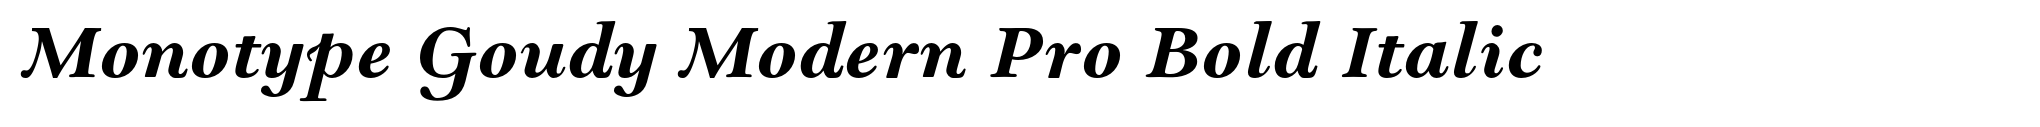 Monotype Goudy Modern Pro Bold Italic image